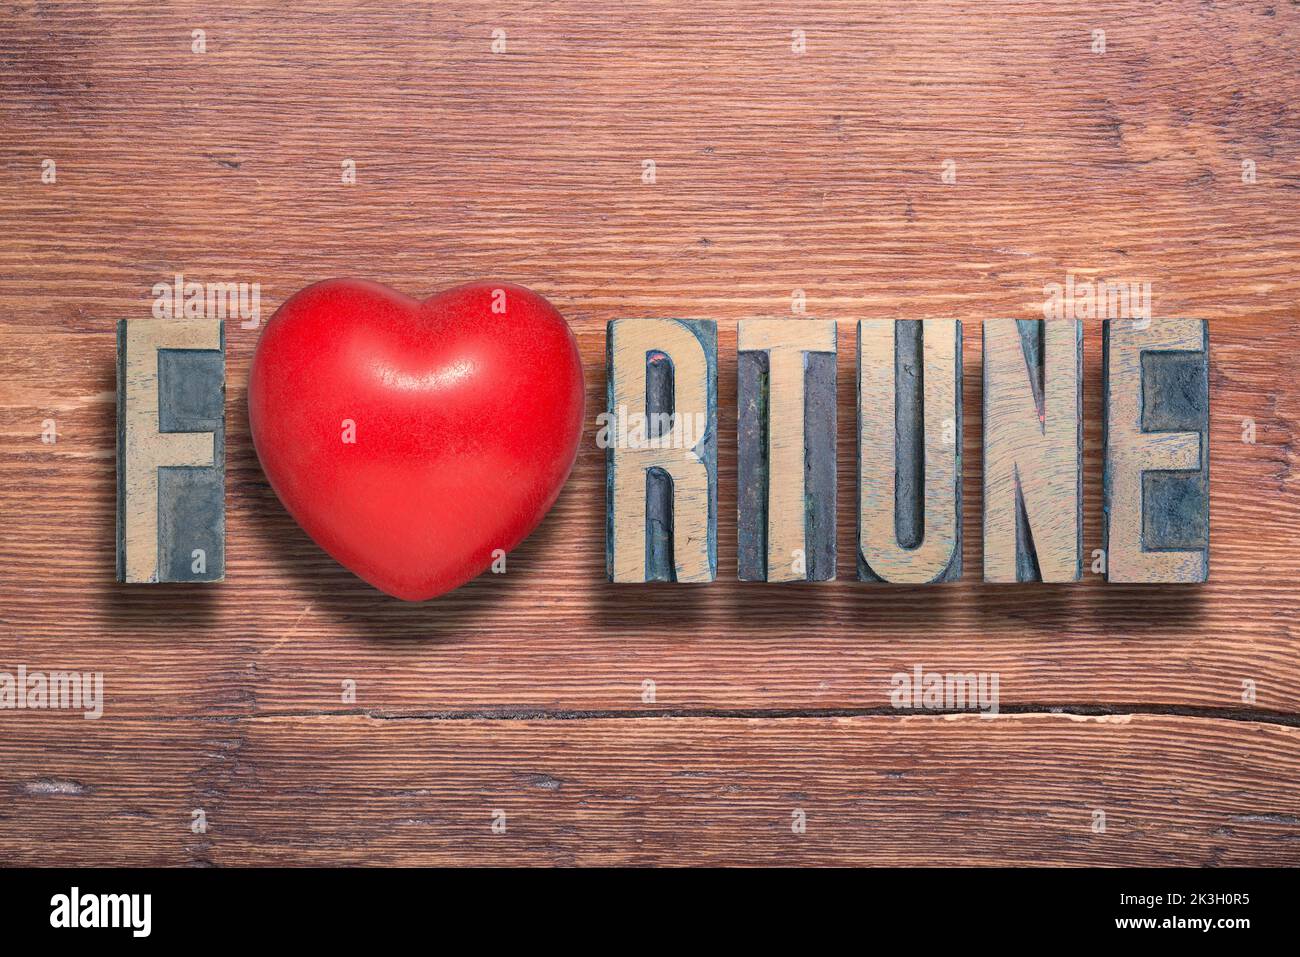 palabra de fortuna combinada en una superficie de madera barnizada vintage con un símbolo de corazón en su interior Foto de stock